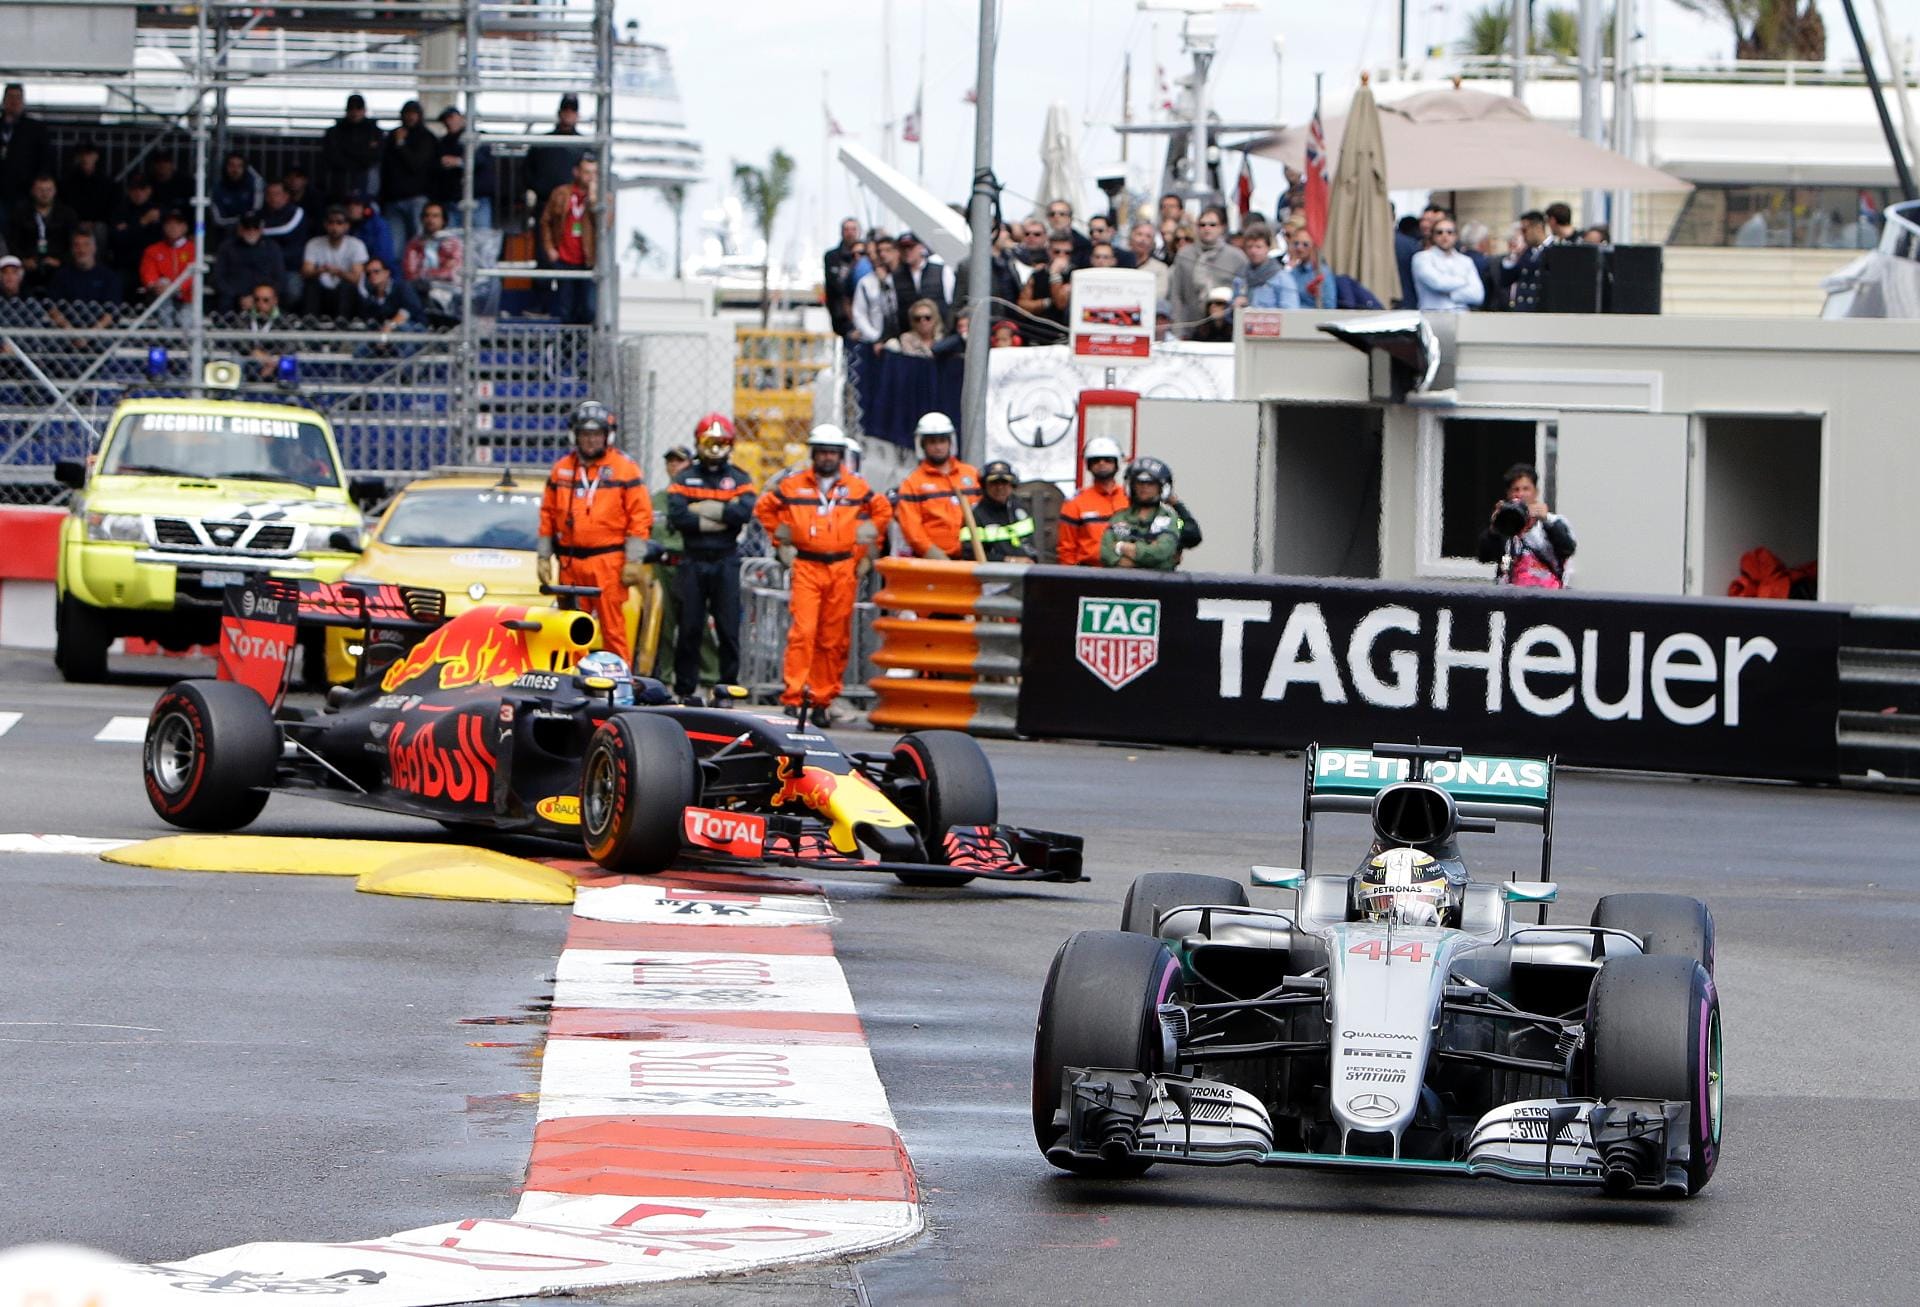 Die Strecke trocknet im Laufe des Rennens ab. Und hätte die Crew von Daniel Ricciardo nicht einen Boxenstopp verpatzt, hätte der Australier wahrscheinlich gewonnen. Doch so hat am Ende Lewis Hamilton die Nase vorn.